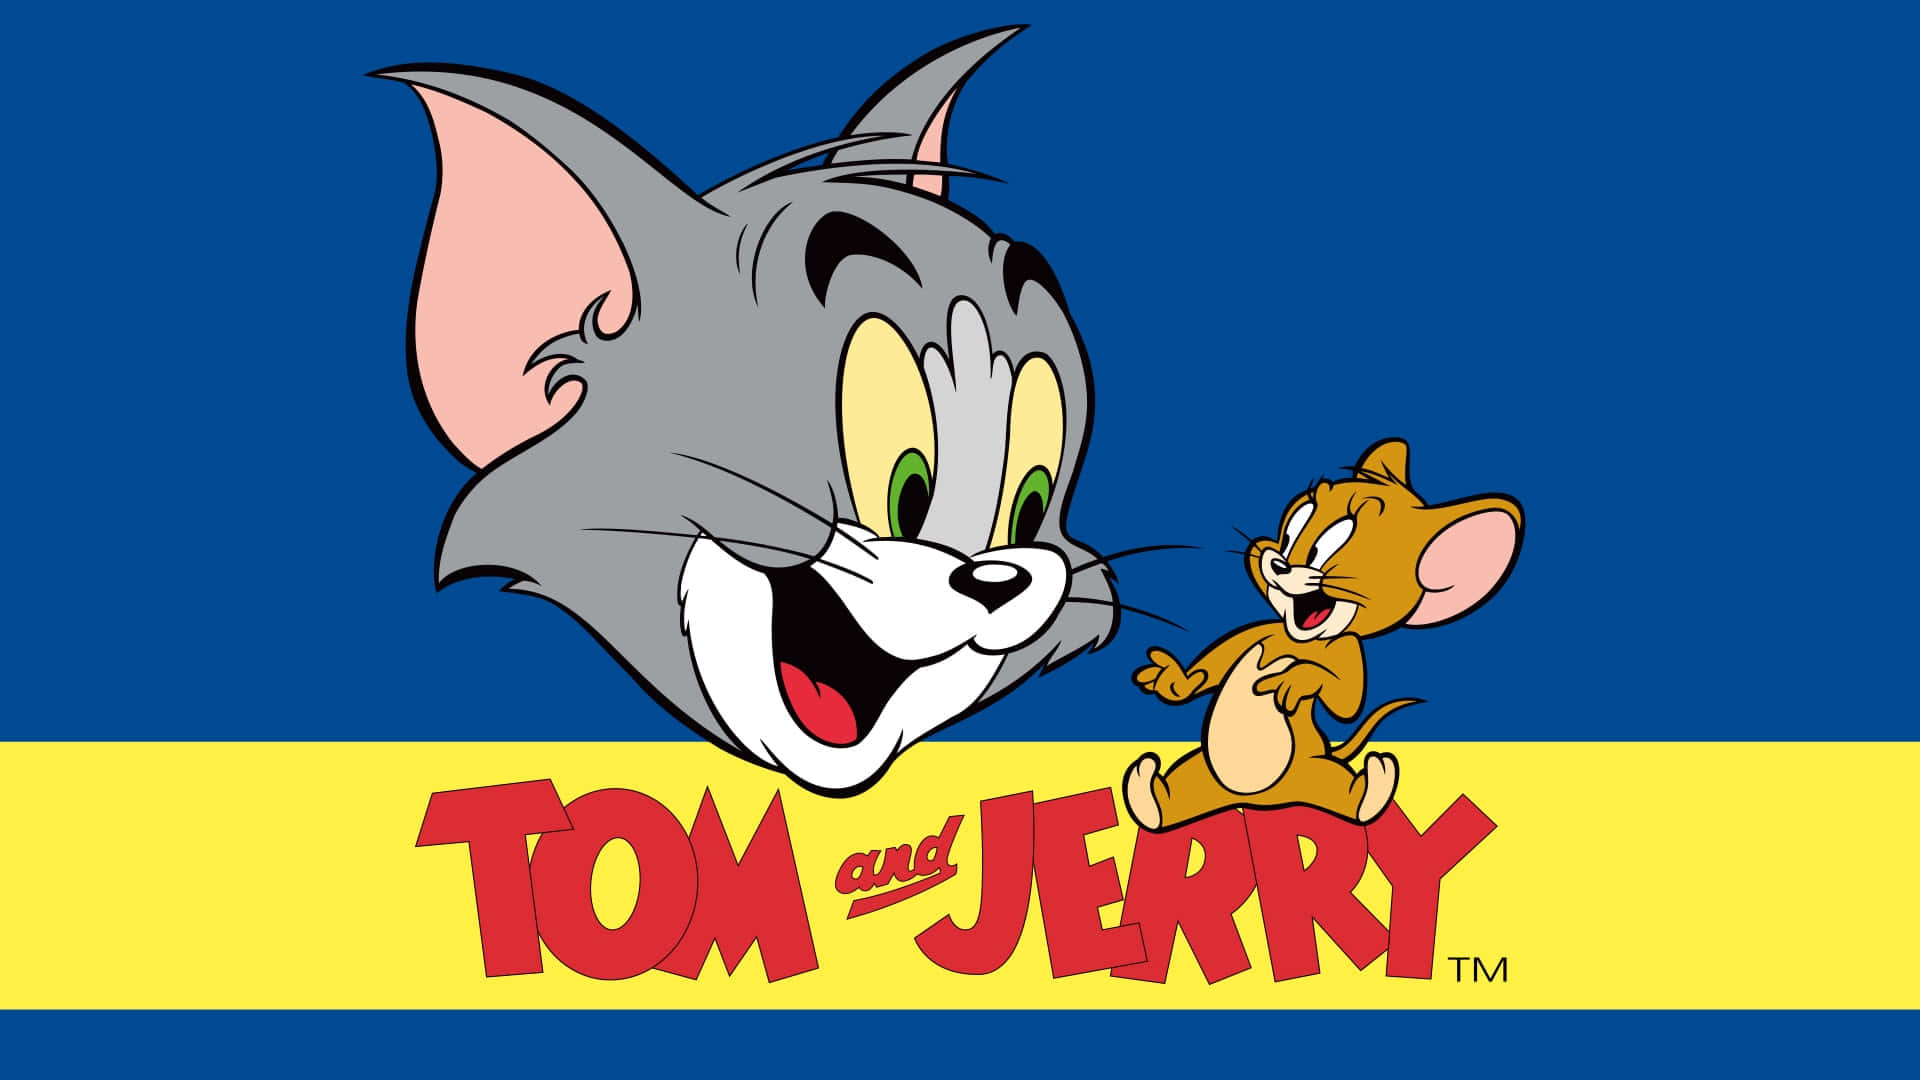 Tome Jerry Si Sfidano In Un Classico Gioco Del Gatto E Del Topo.